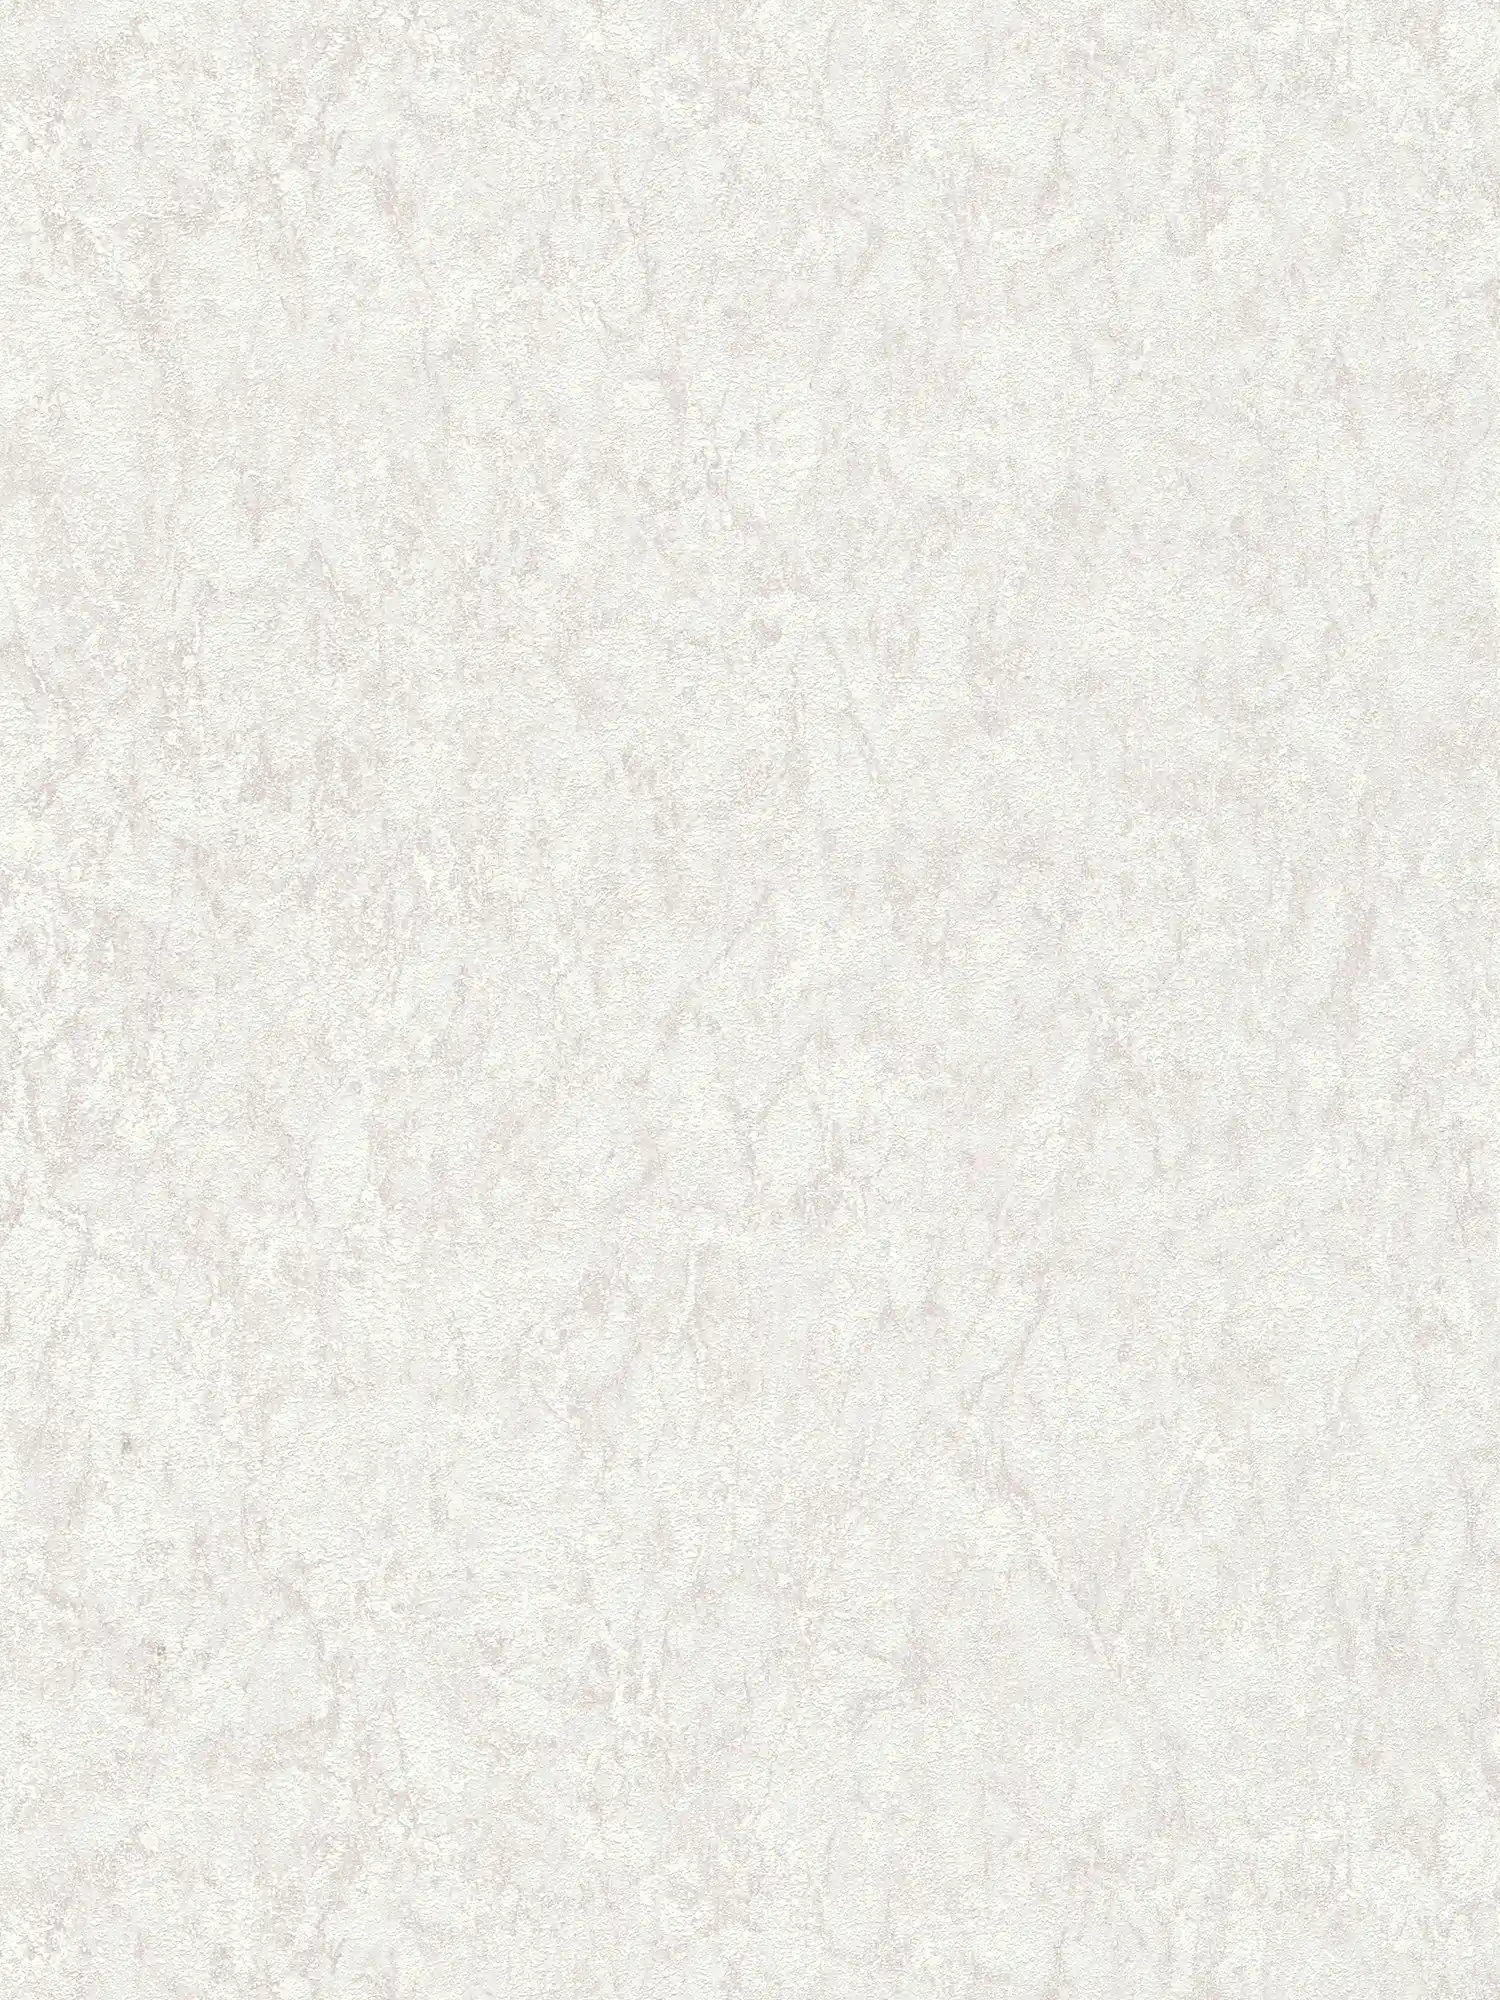 Papier peint uni avec effet texturé & dessin chiné - gris, beige, crème
